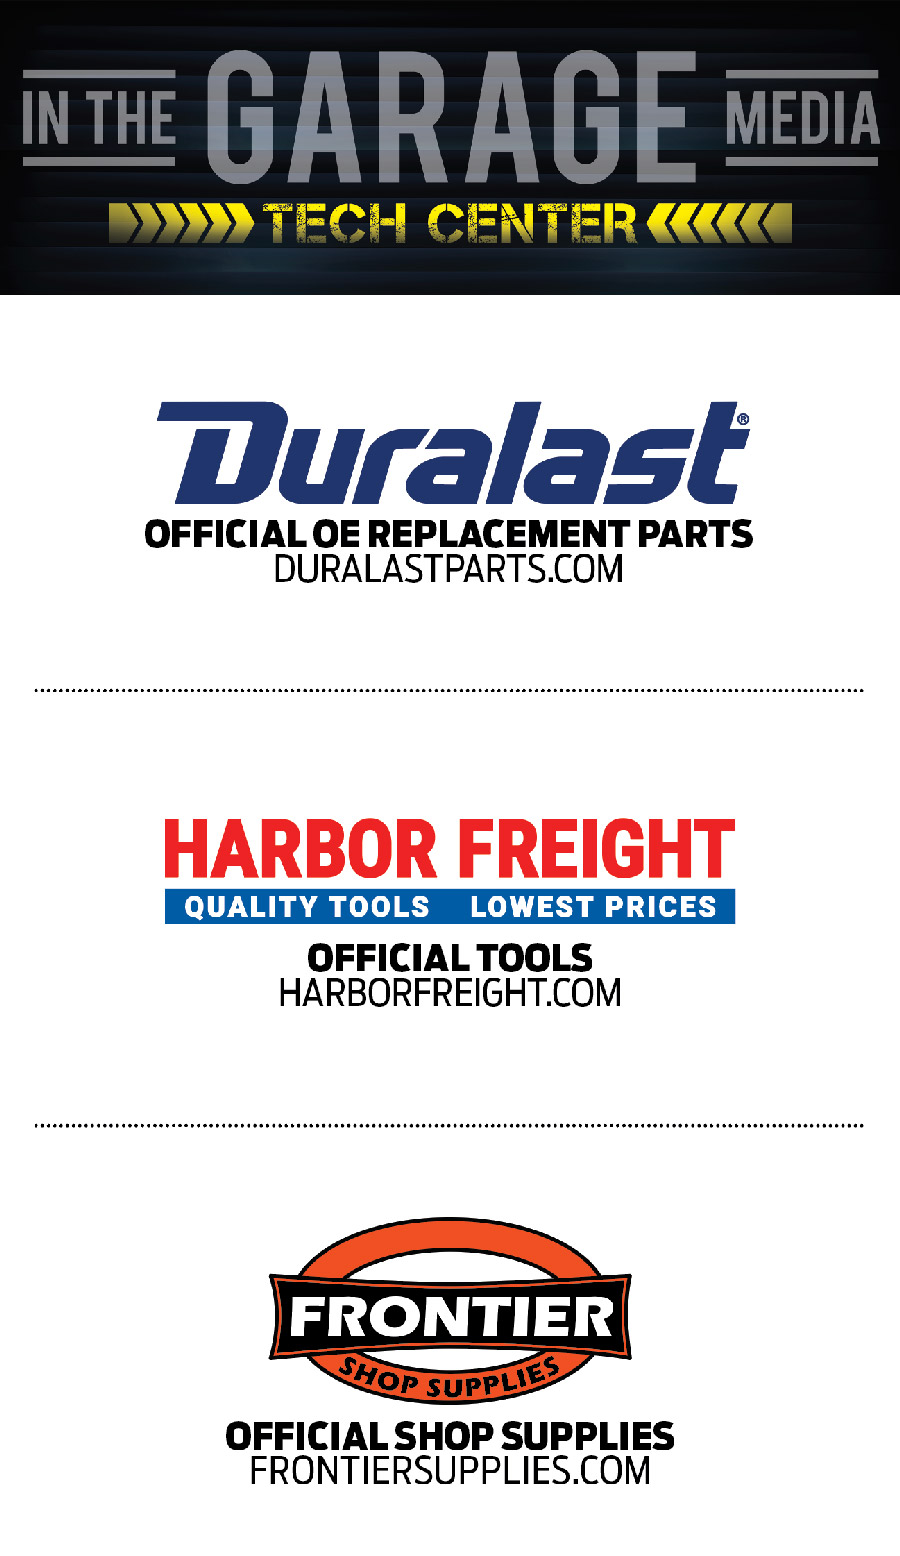 Duralast, Harbor Freight, Frontier Logos